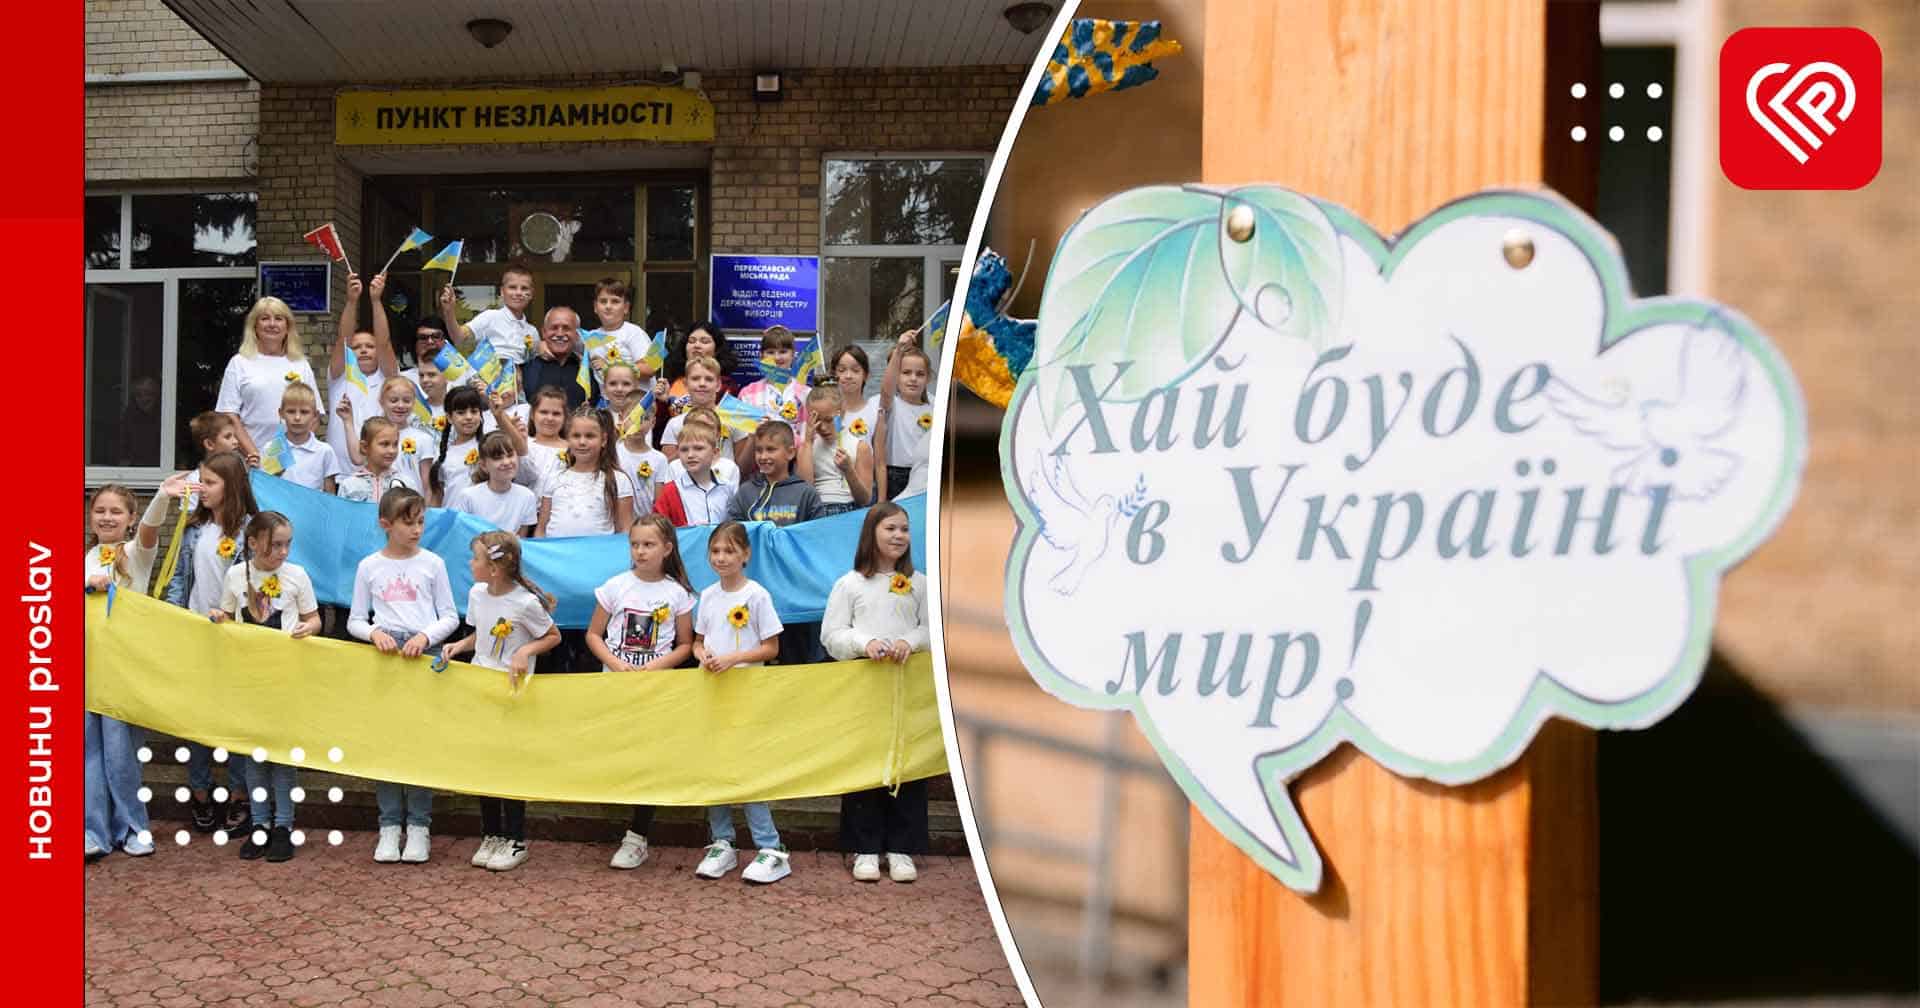 Переяславські школярі відзначили День миру патріотичною ходою та флешмобами